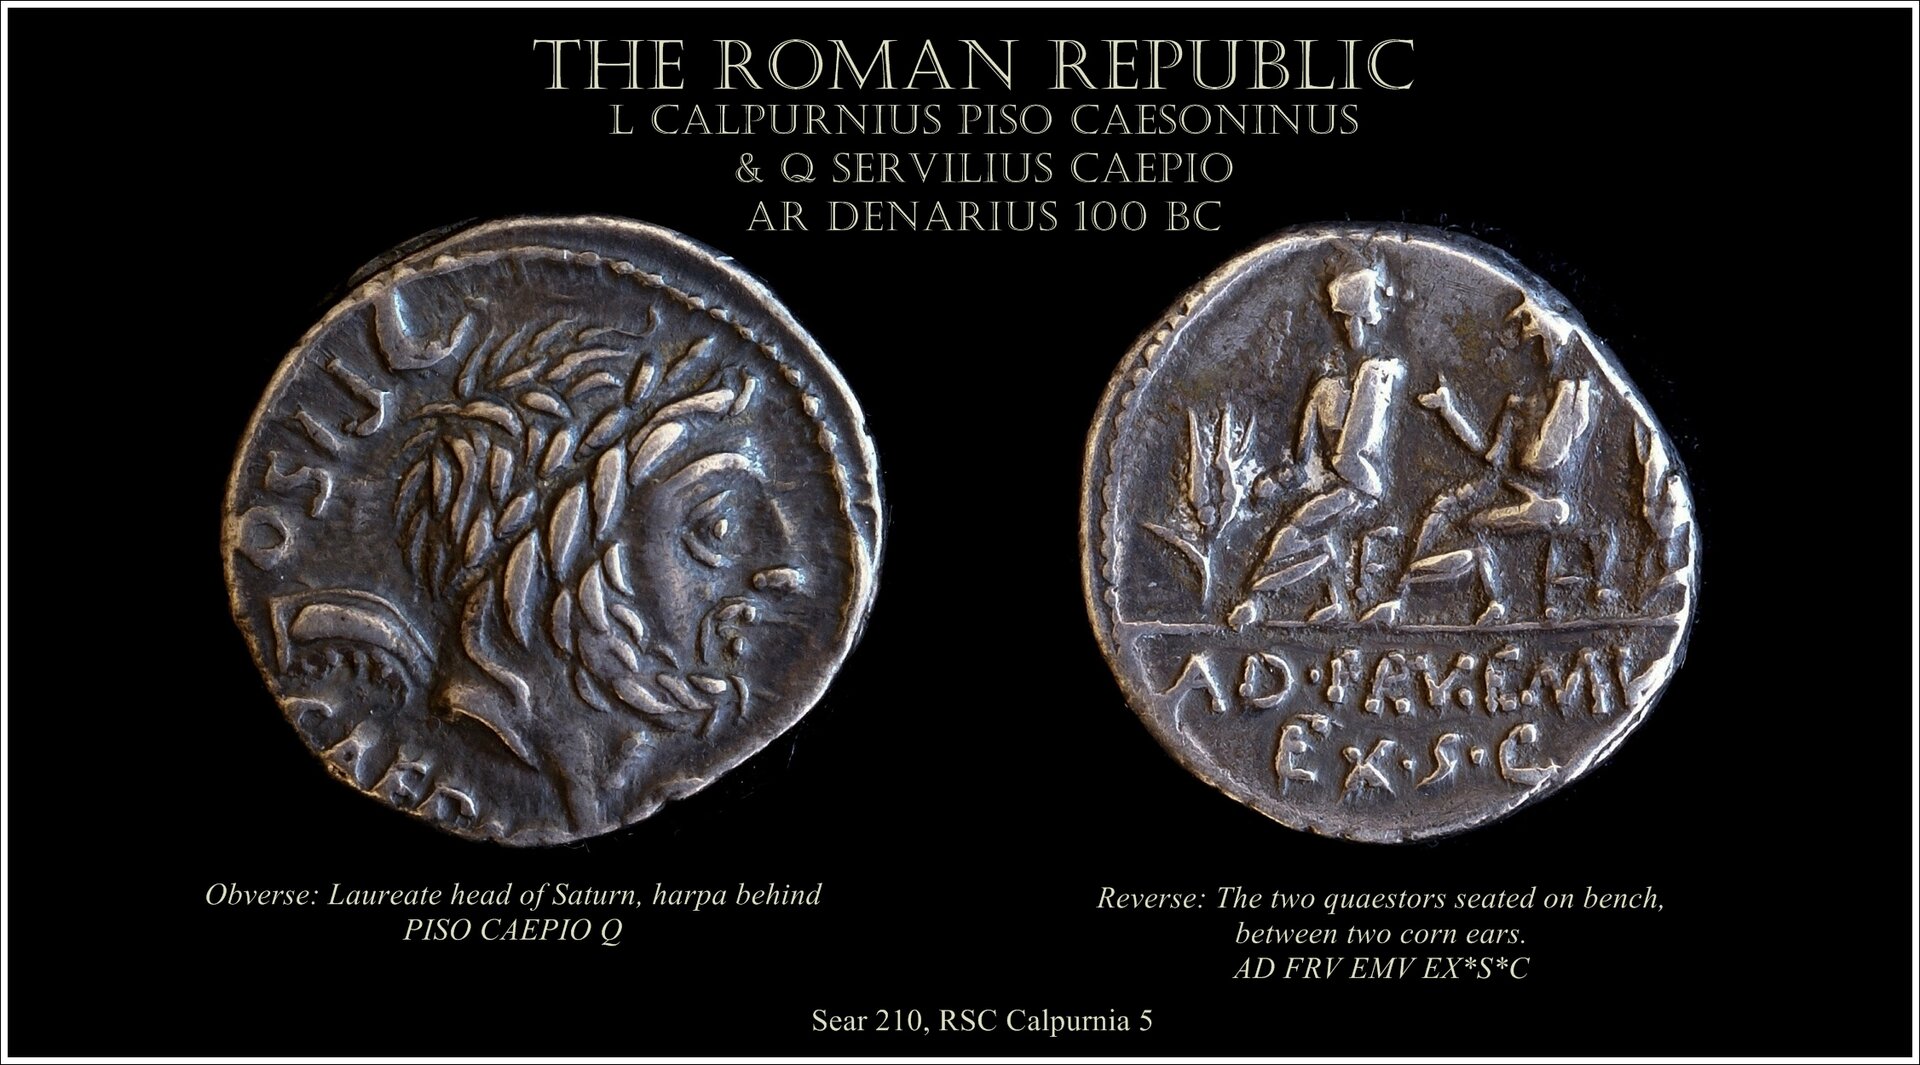 Sear 210 L. Calpurnius Piso Caesonius & Q. Servilius Capio 100 BC.jpg